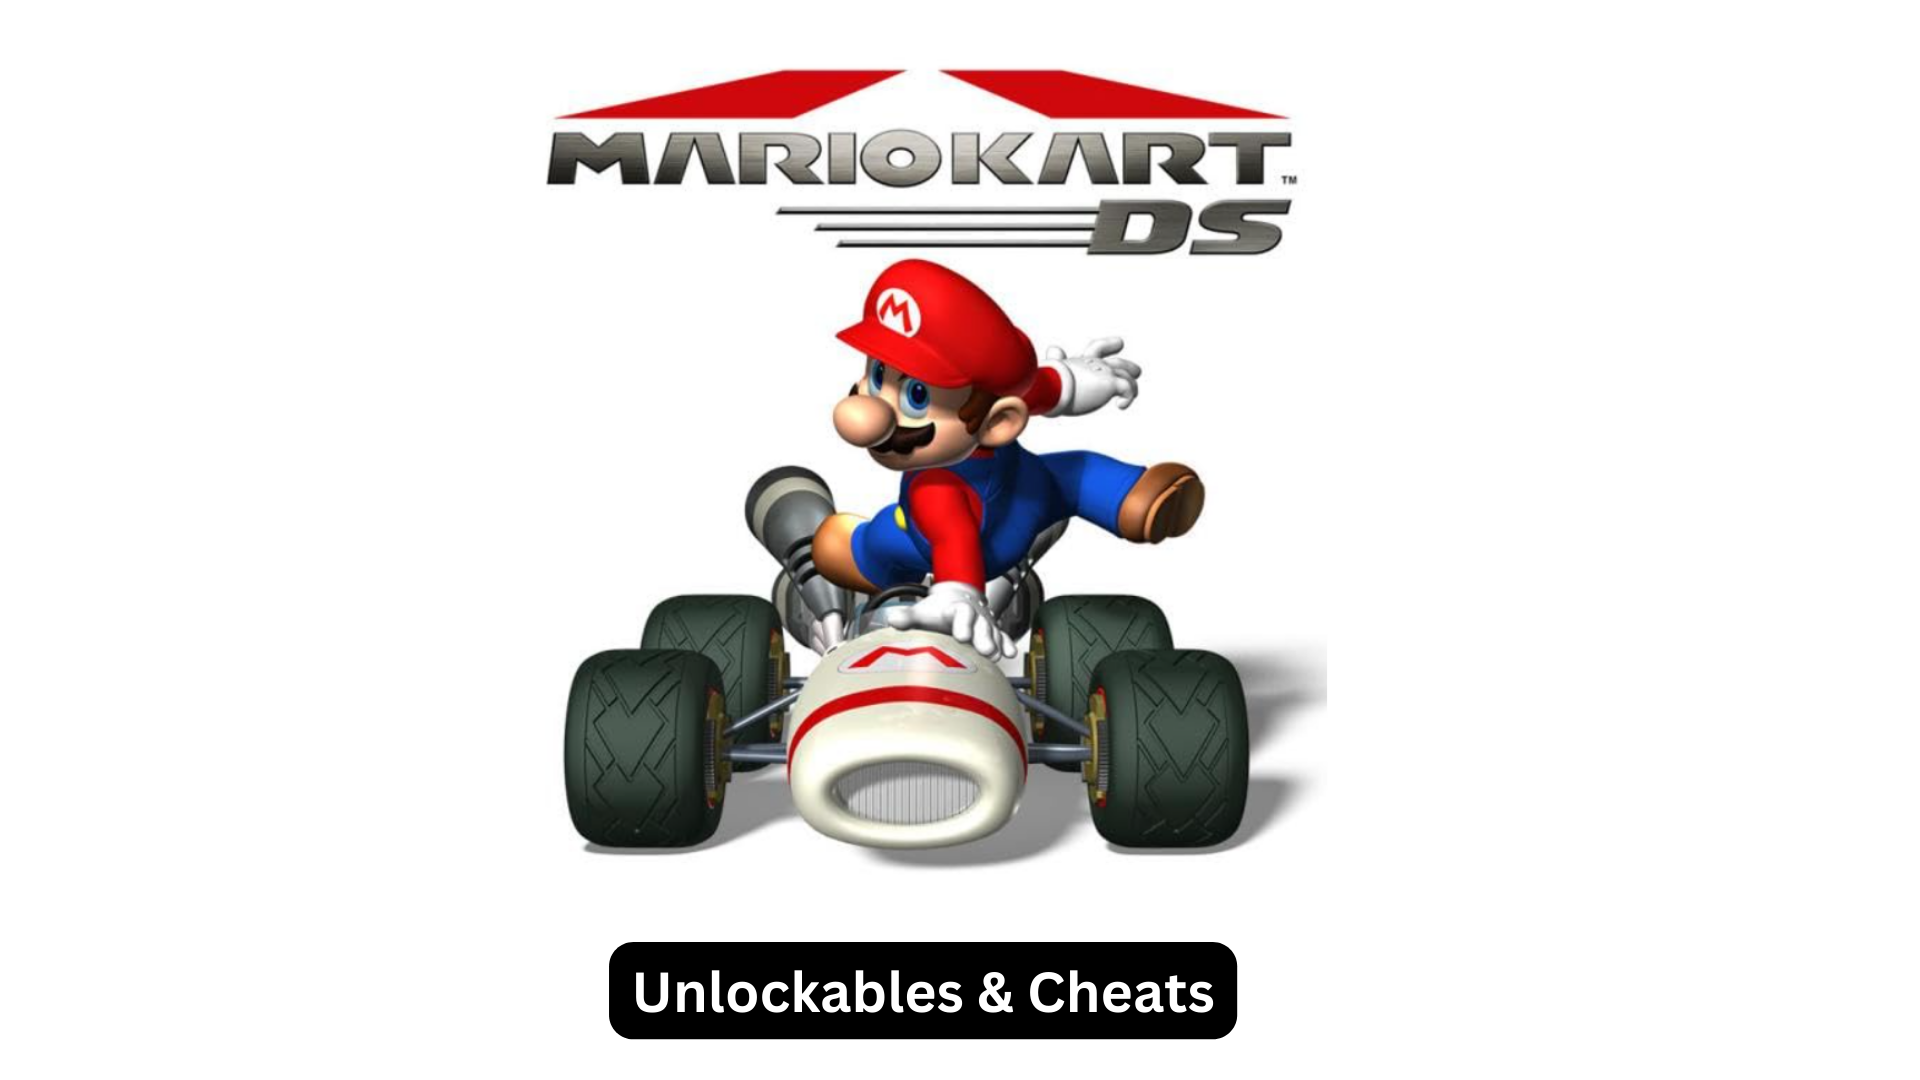 Mario Kart DS Unlockables & Cheats